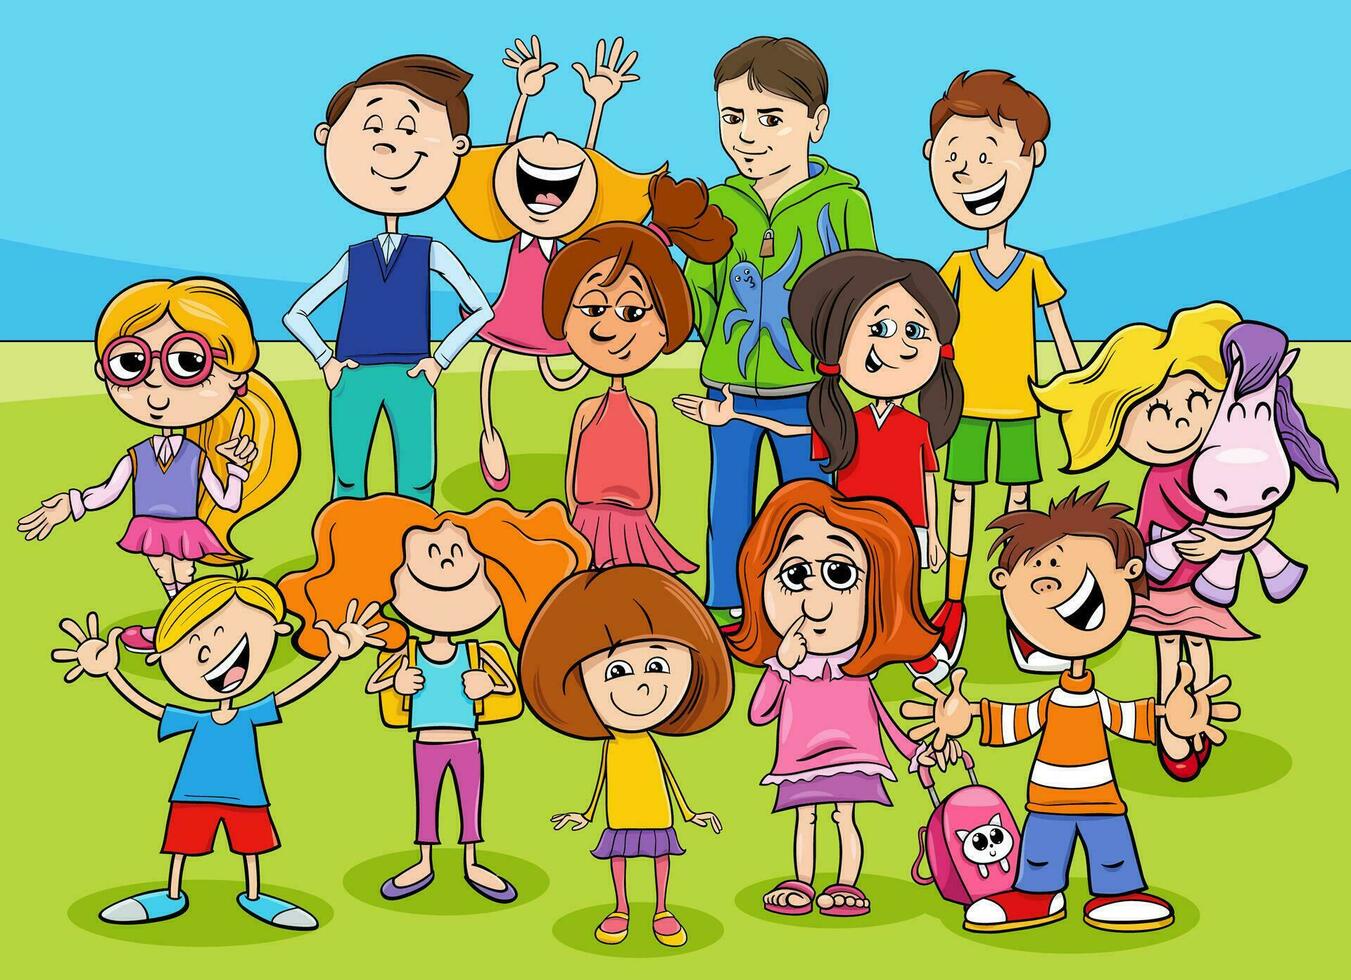 content dessin animé les enfants et adolescents personnages groupe vecteur